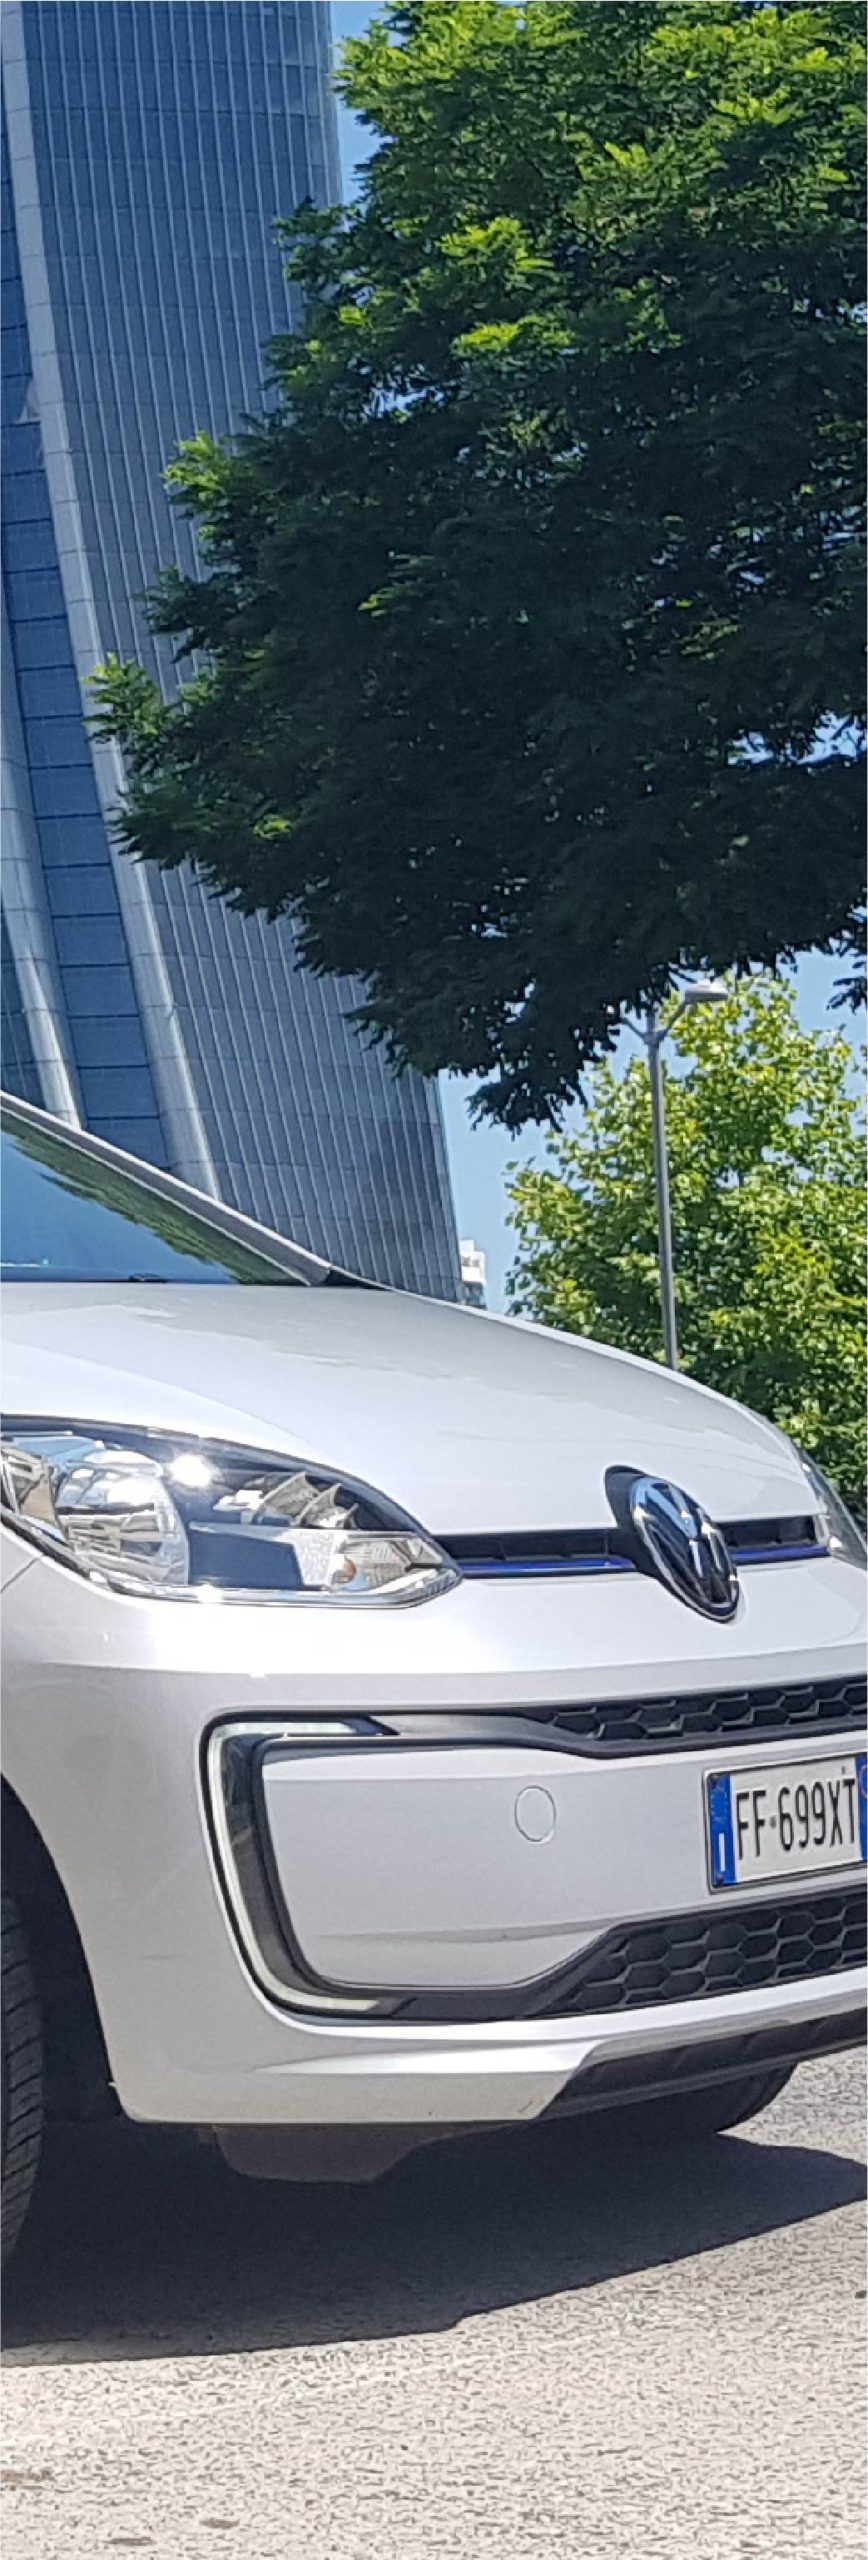 Volkswagen E-up